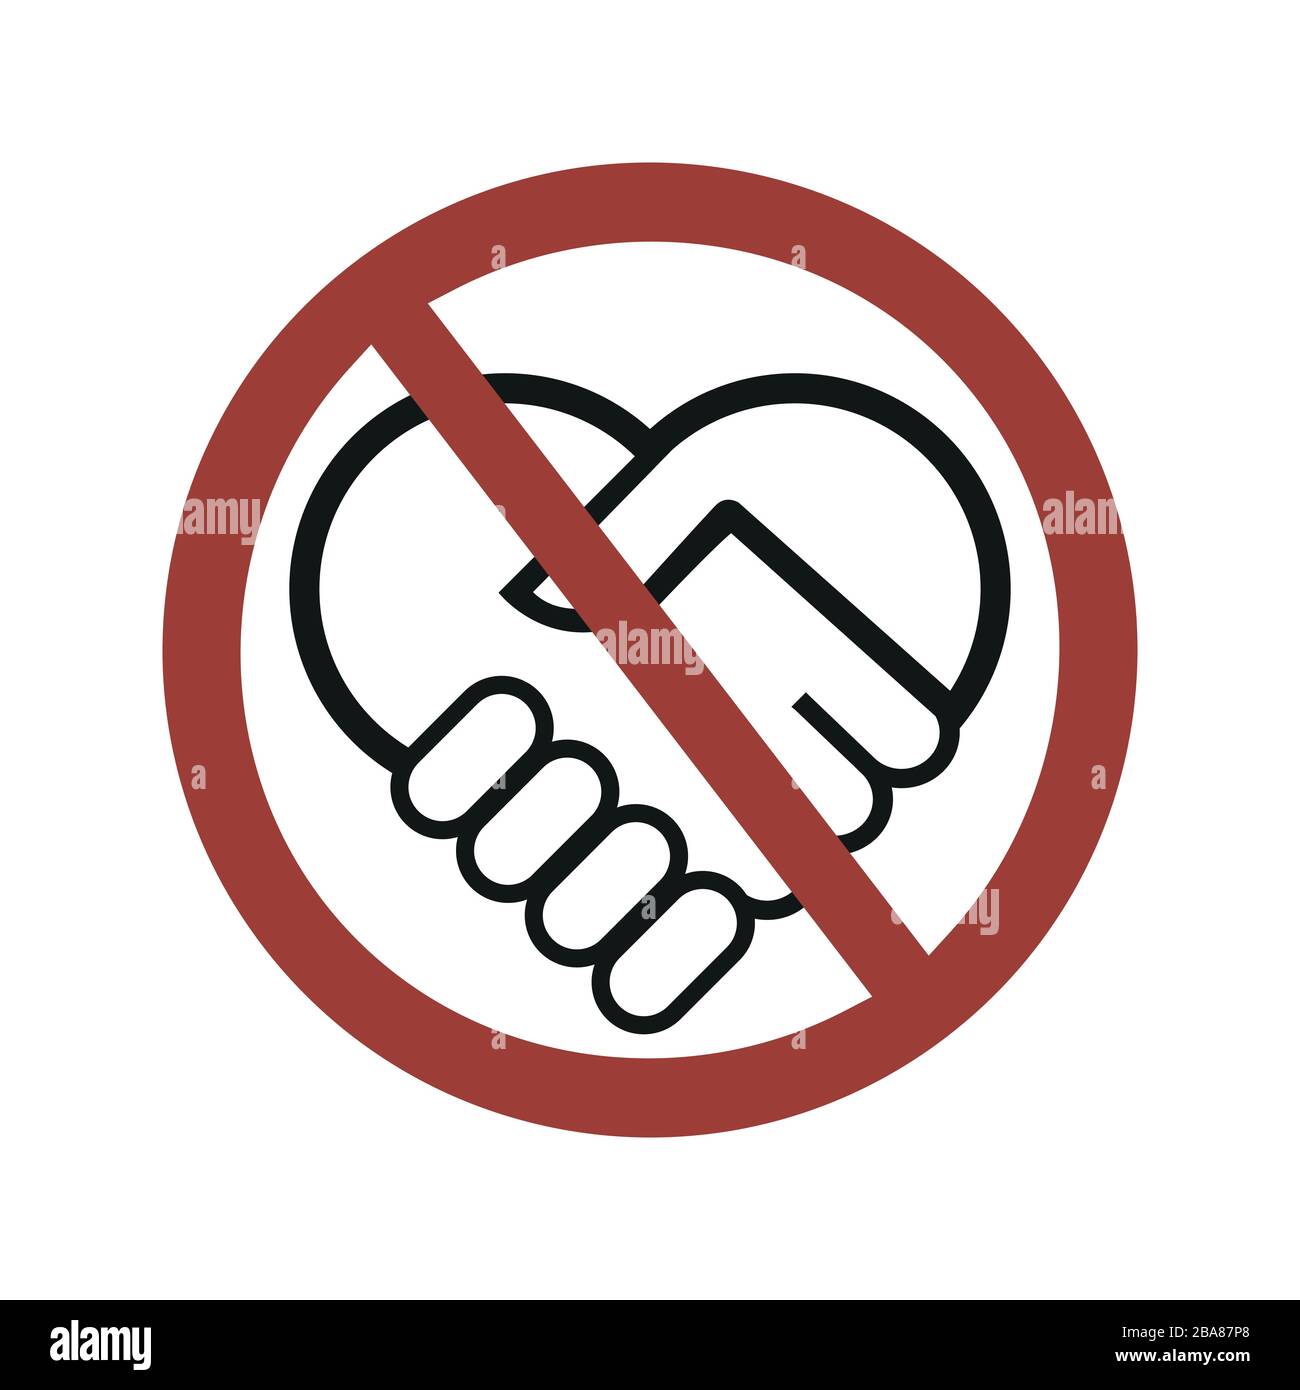 Kein Handshake-Zeichen, Symbol für Vektorgrafiken Stock Vektor